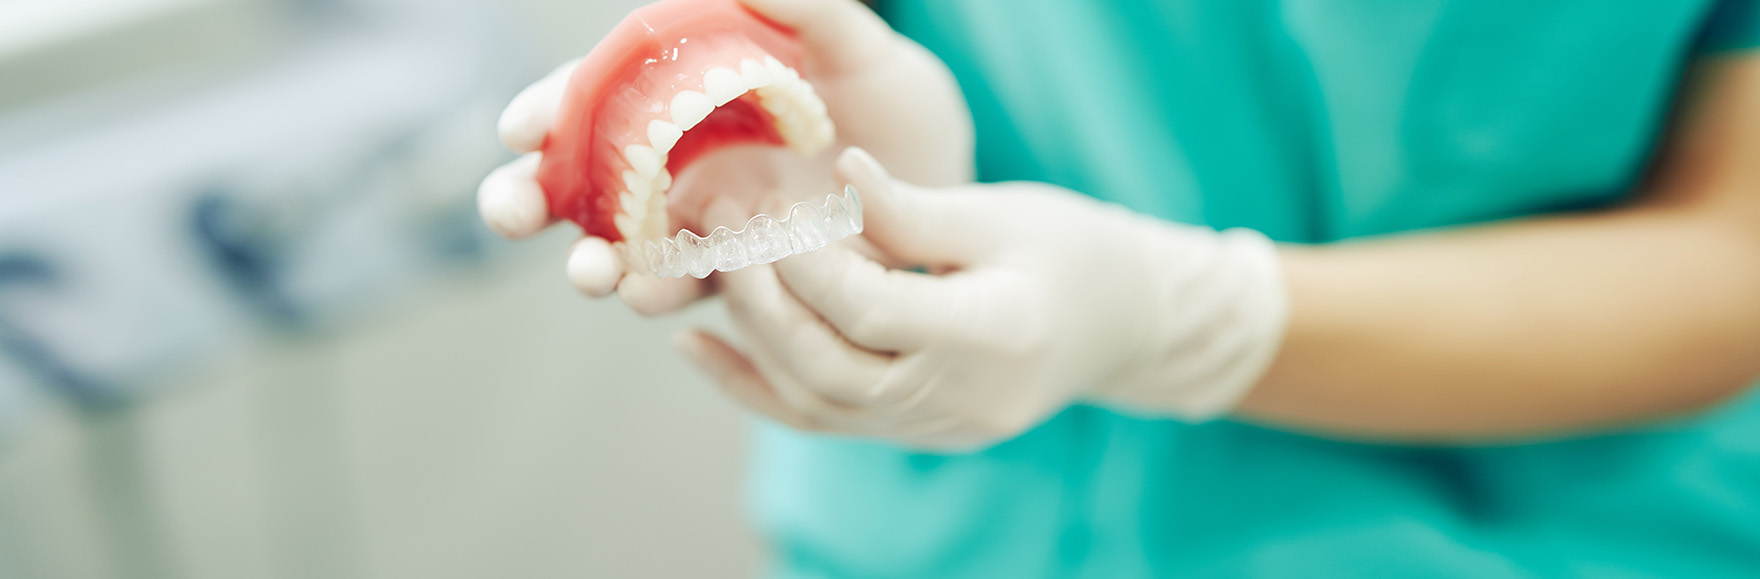 日本矯正歯科学会 認定医が在籍 専門的な矯正治療